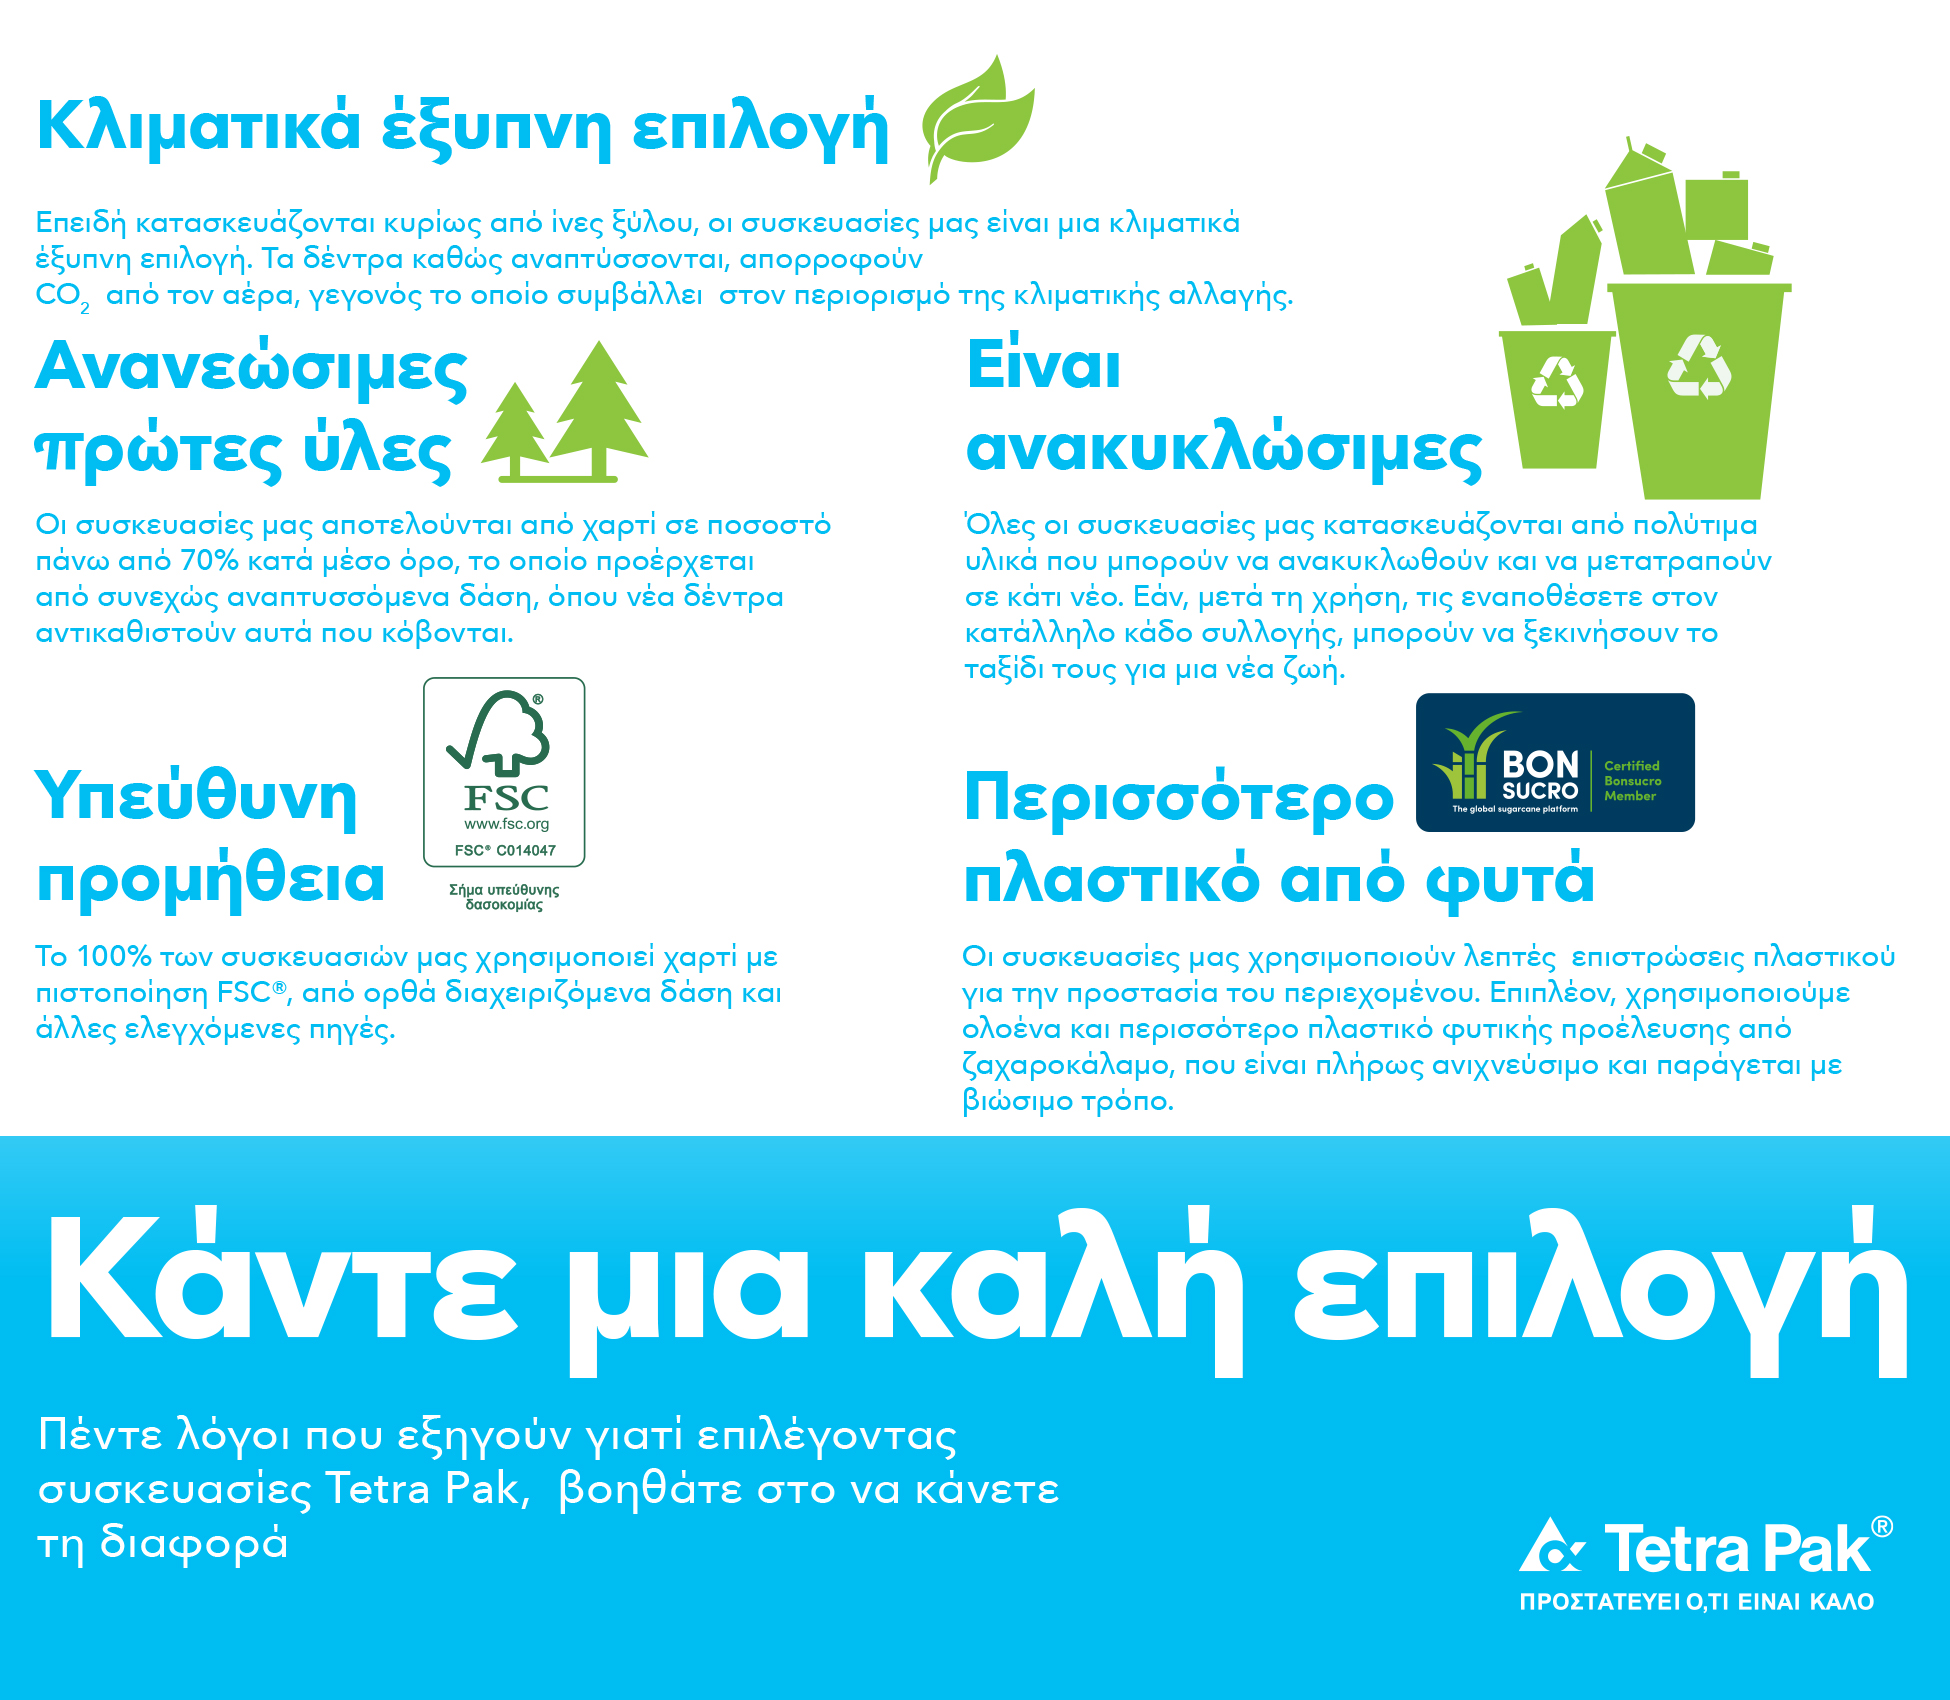 Tetra Pak: Διάλεξε χάρτινες συσκευασίες που ανακυκλώνονται και κάνε μια σωστή & βιώσιμη επιλογή για το περιβάλλον